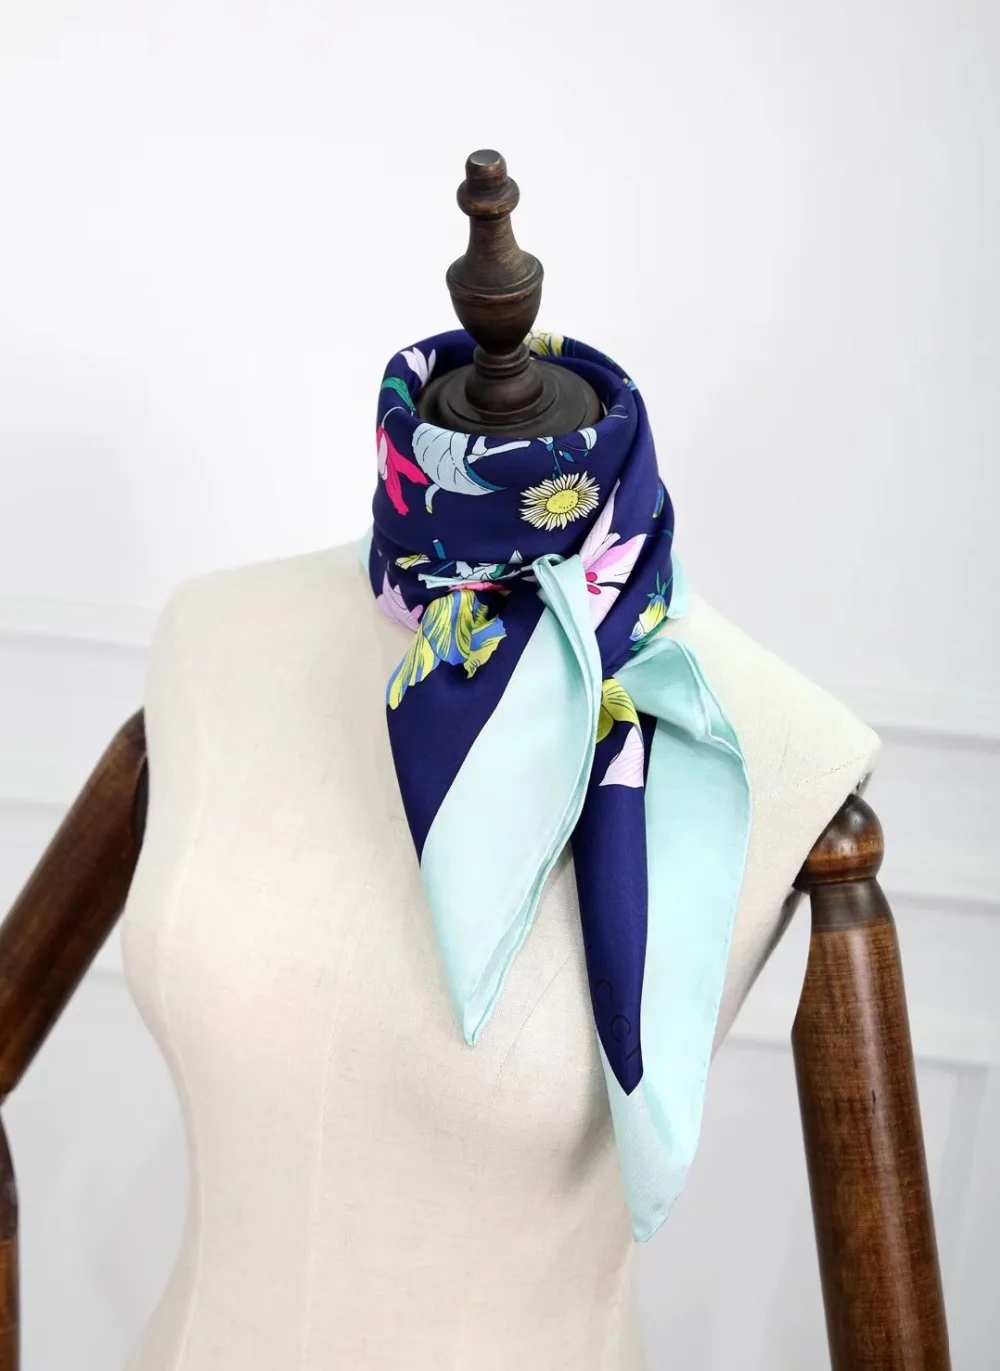 Новое поступление осень Весна цветочный принт 90*90 см квадратный шарф шелк саржа ручная работа рулон Шаль Обертывание для женщин леди